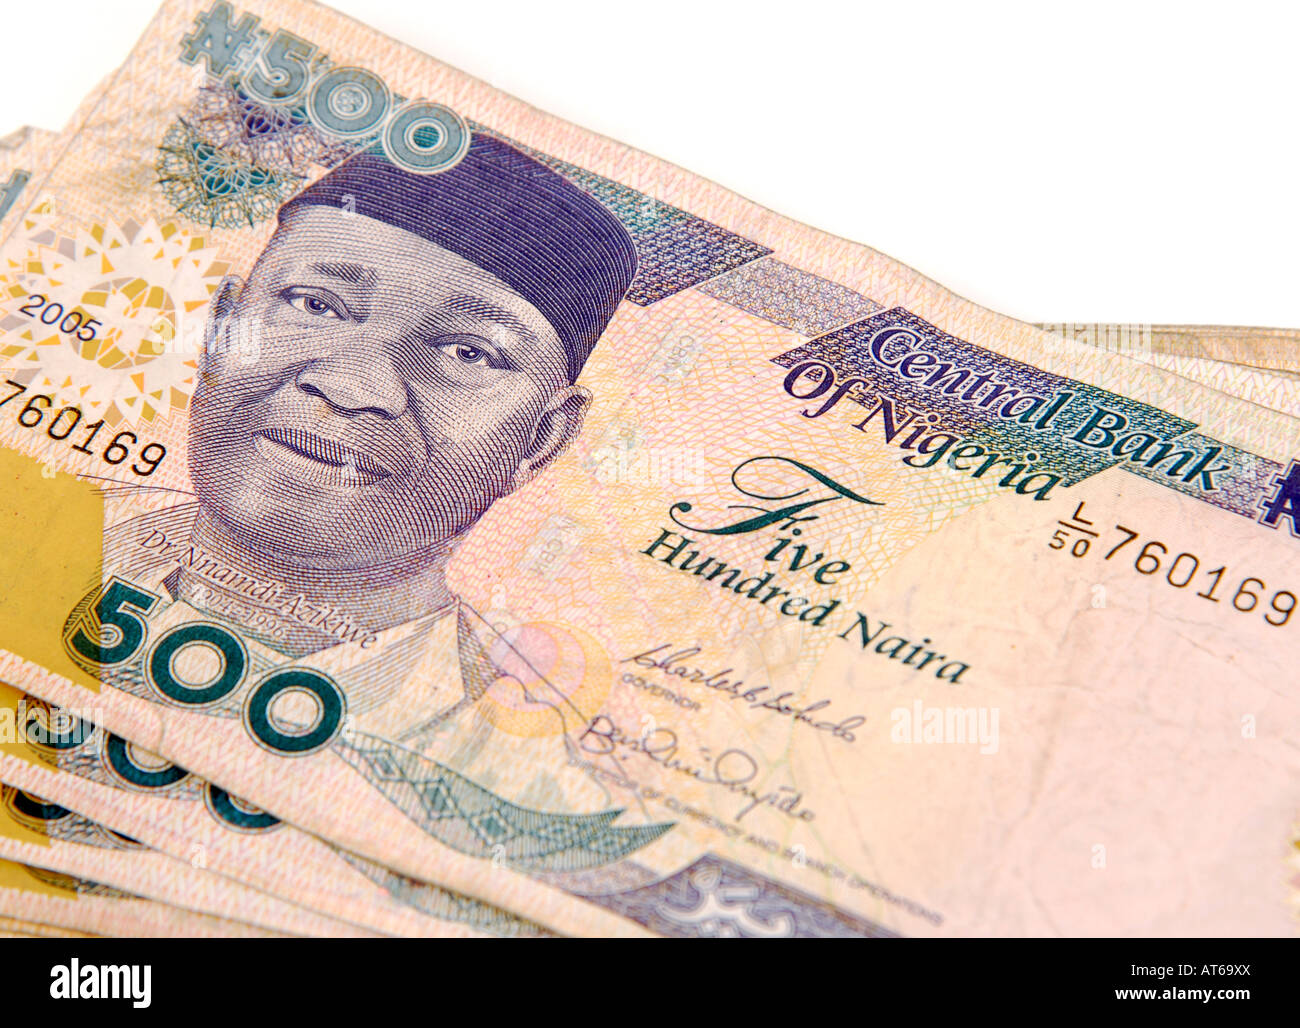 Nigerian Naira currency. 500 Naira banknotes. Stock Photo